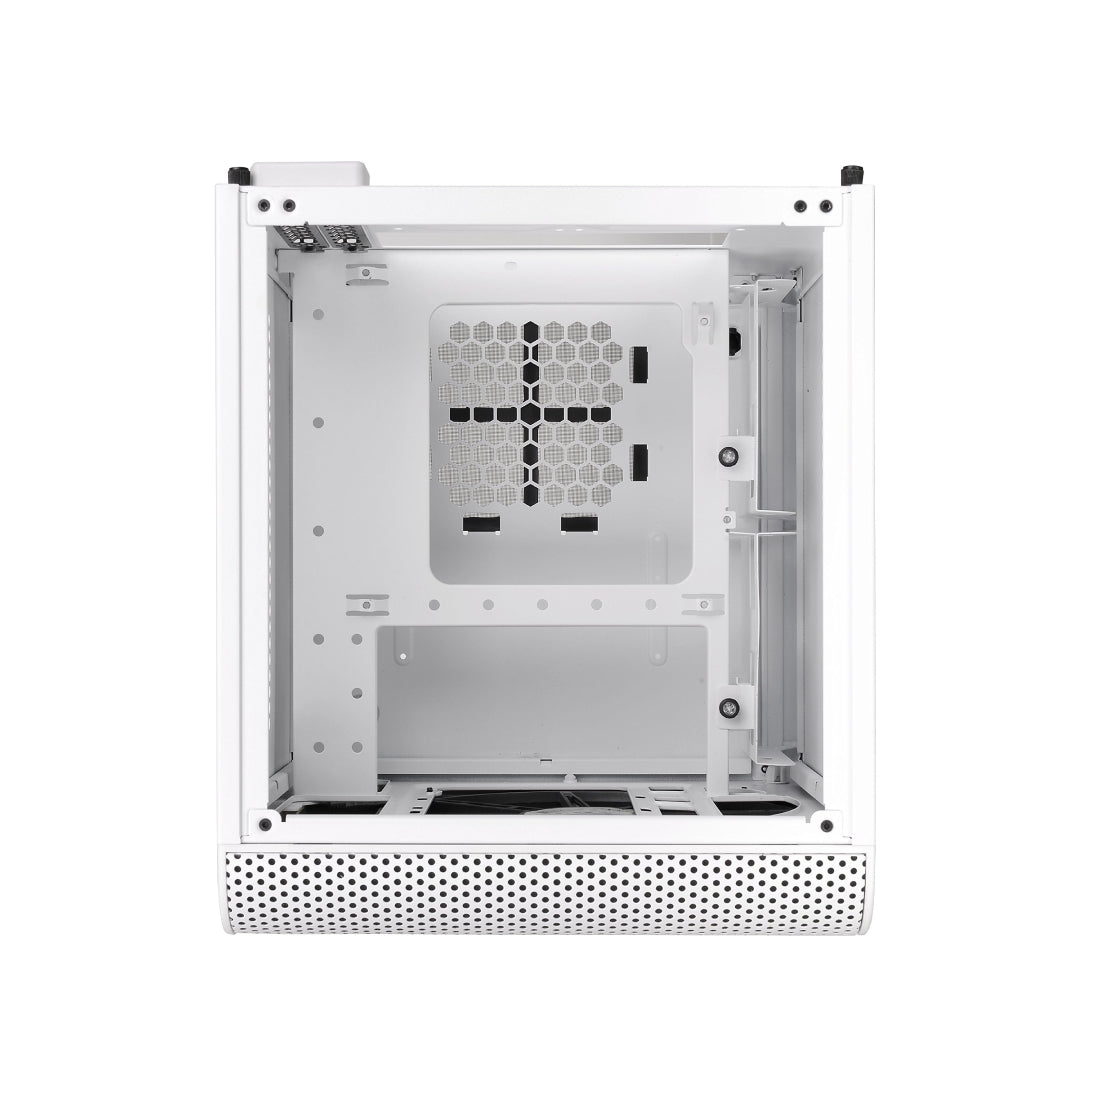 Thermaltake V1 Cube Micro ATX Mini Tower Case - White Edition - صندوق - Store 974 | ستور ٩٧٤